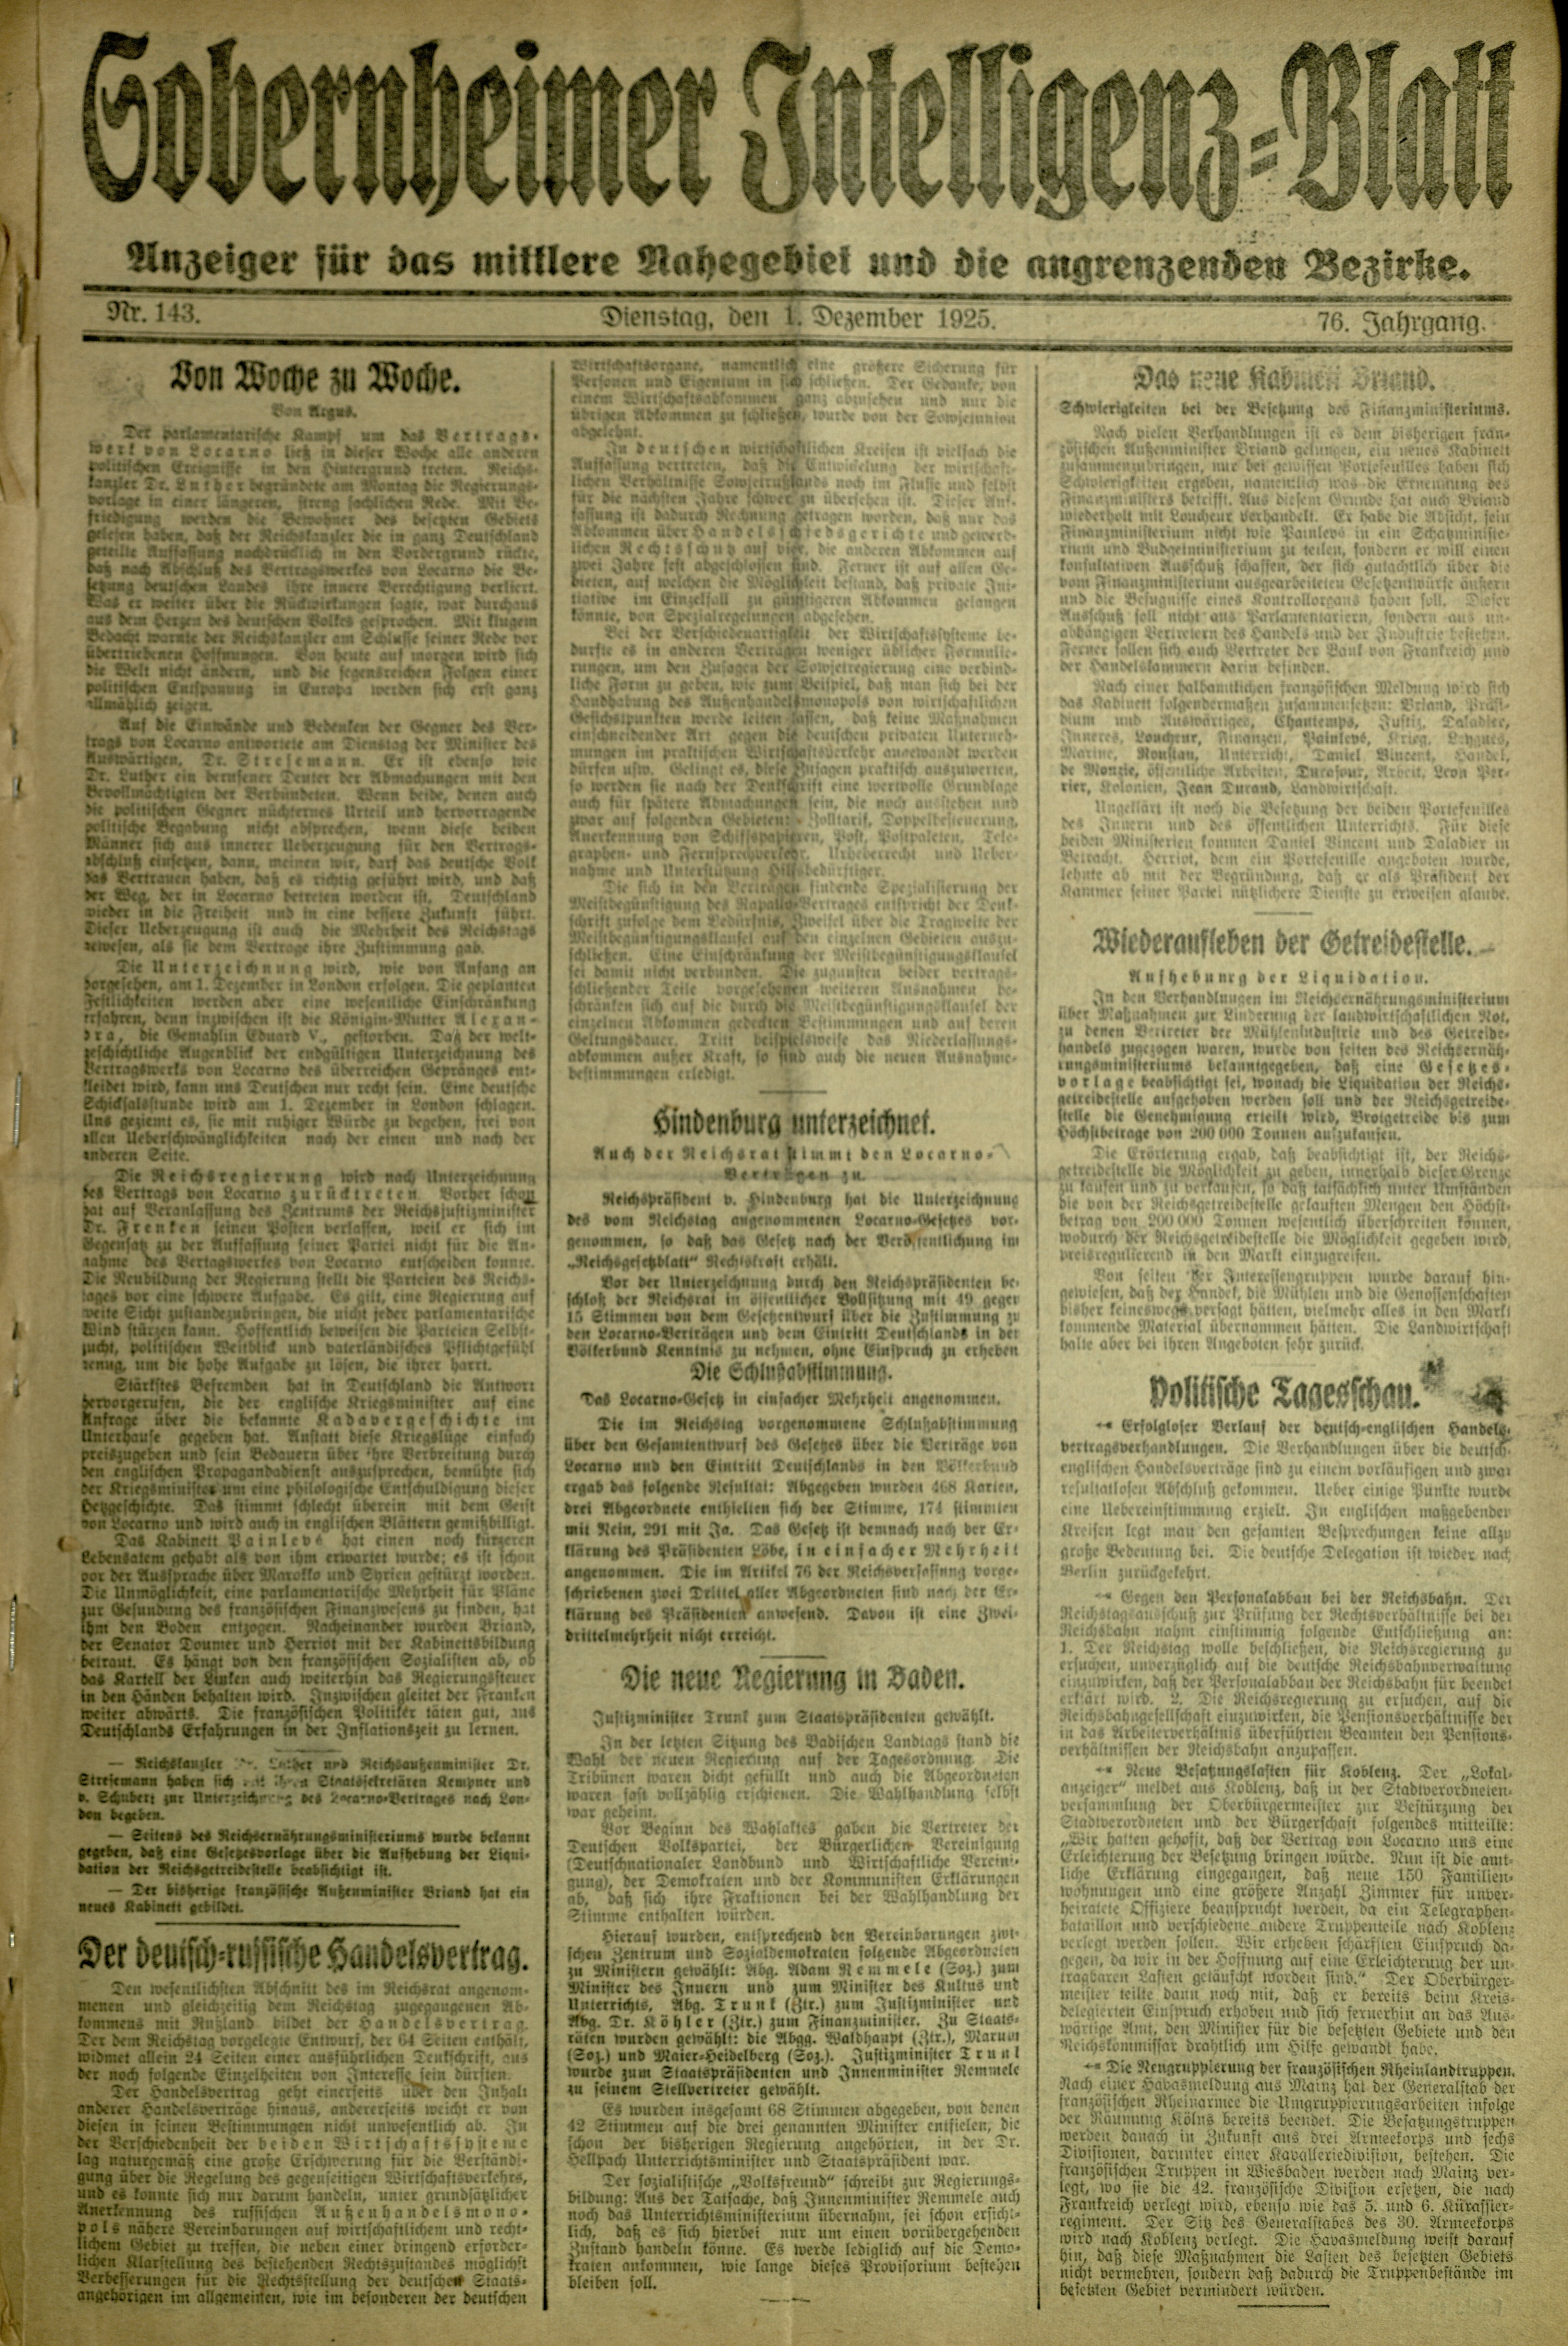 Zeitung: Sobernheimer Intelligenzblatt; Dezember 1925, Jg. 76 Nr. 143 (Heimatmuseum Bad Sobernheim CC BY-NC-SA)